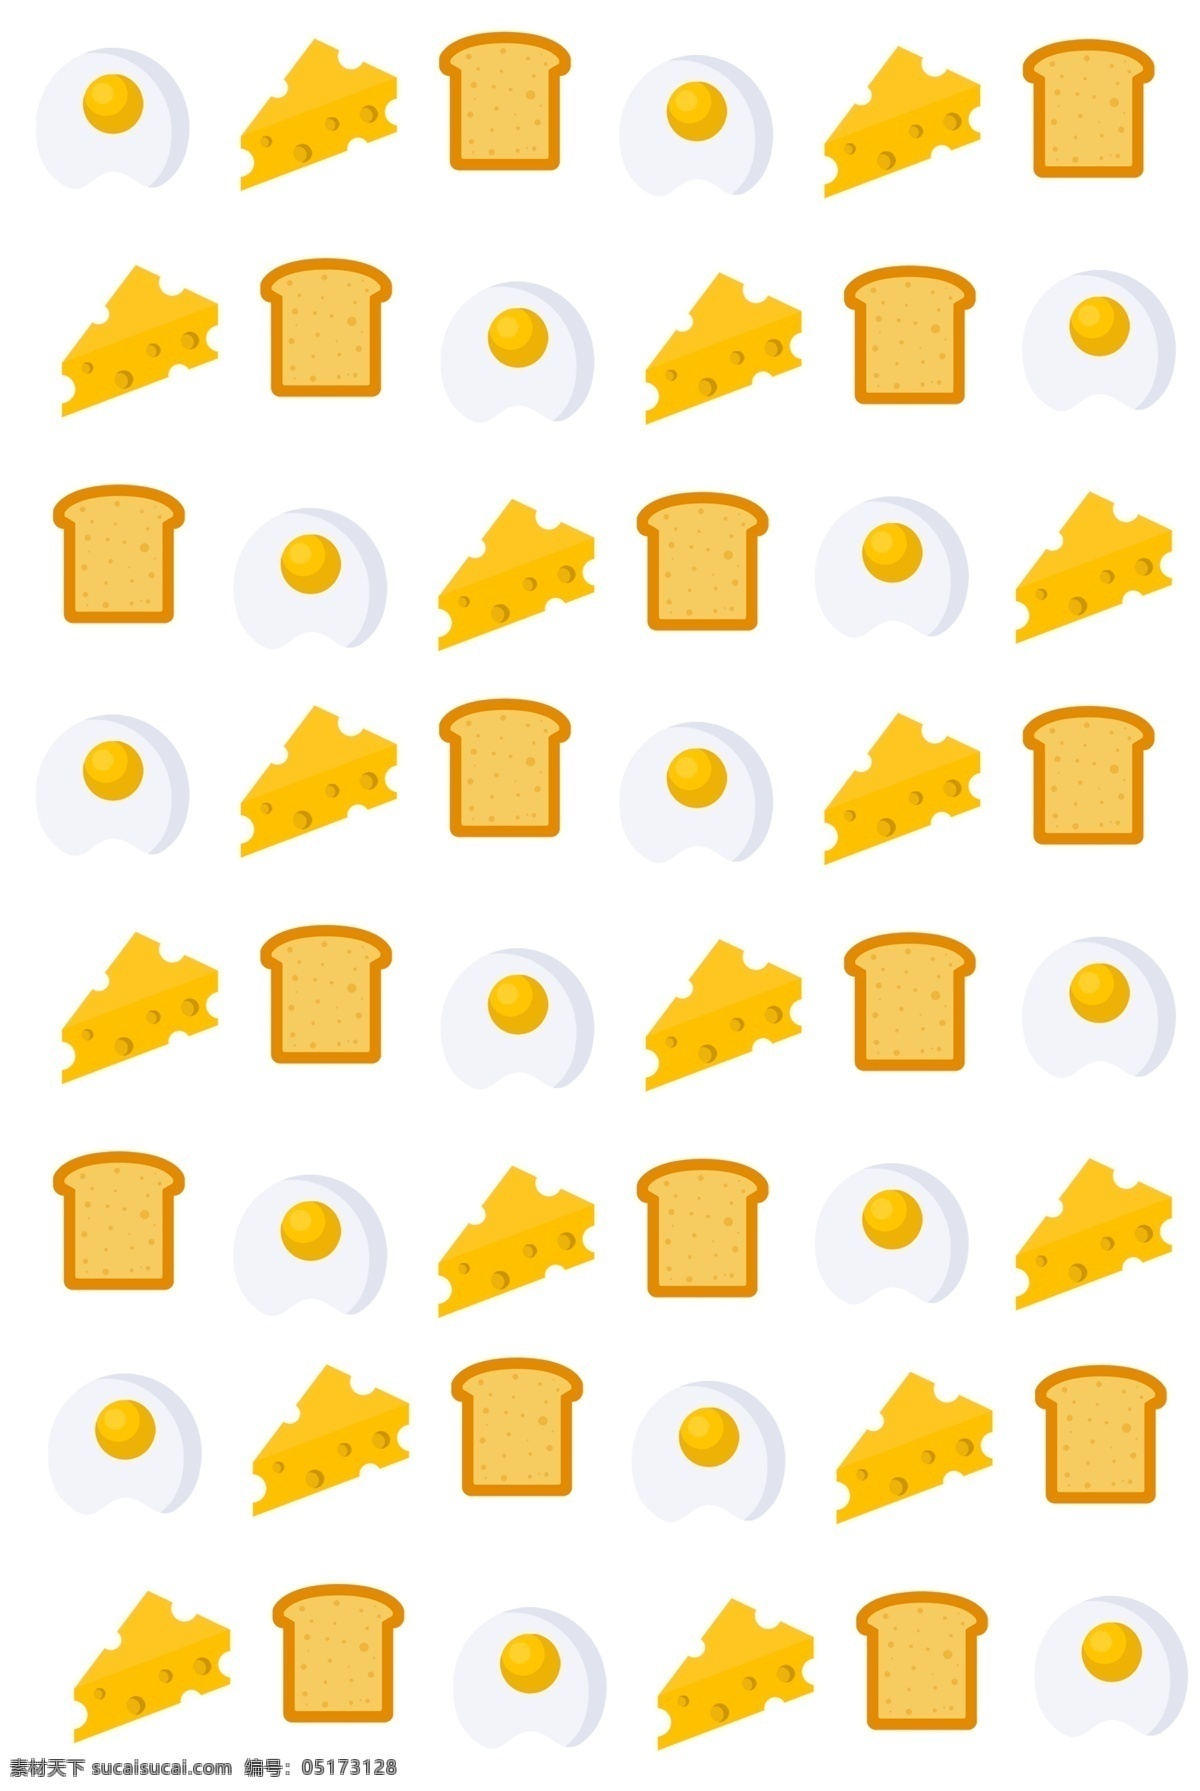 黄色 奶酪 早餐 底纹 手绘早餐底纹 黄色奶酪底纹 底纹装饰插画 鸡蛋底纹 面包底纹 手绘美食底纹